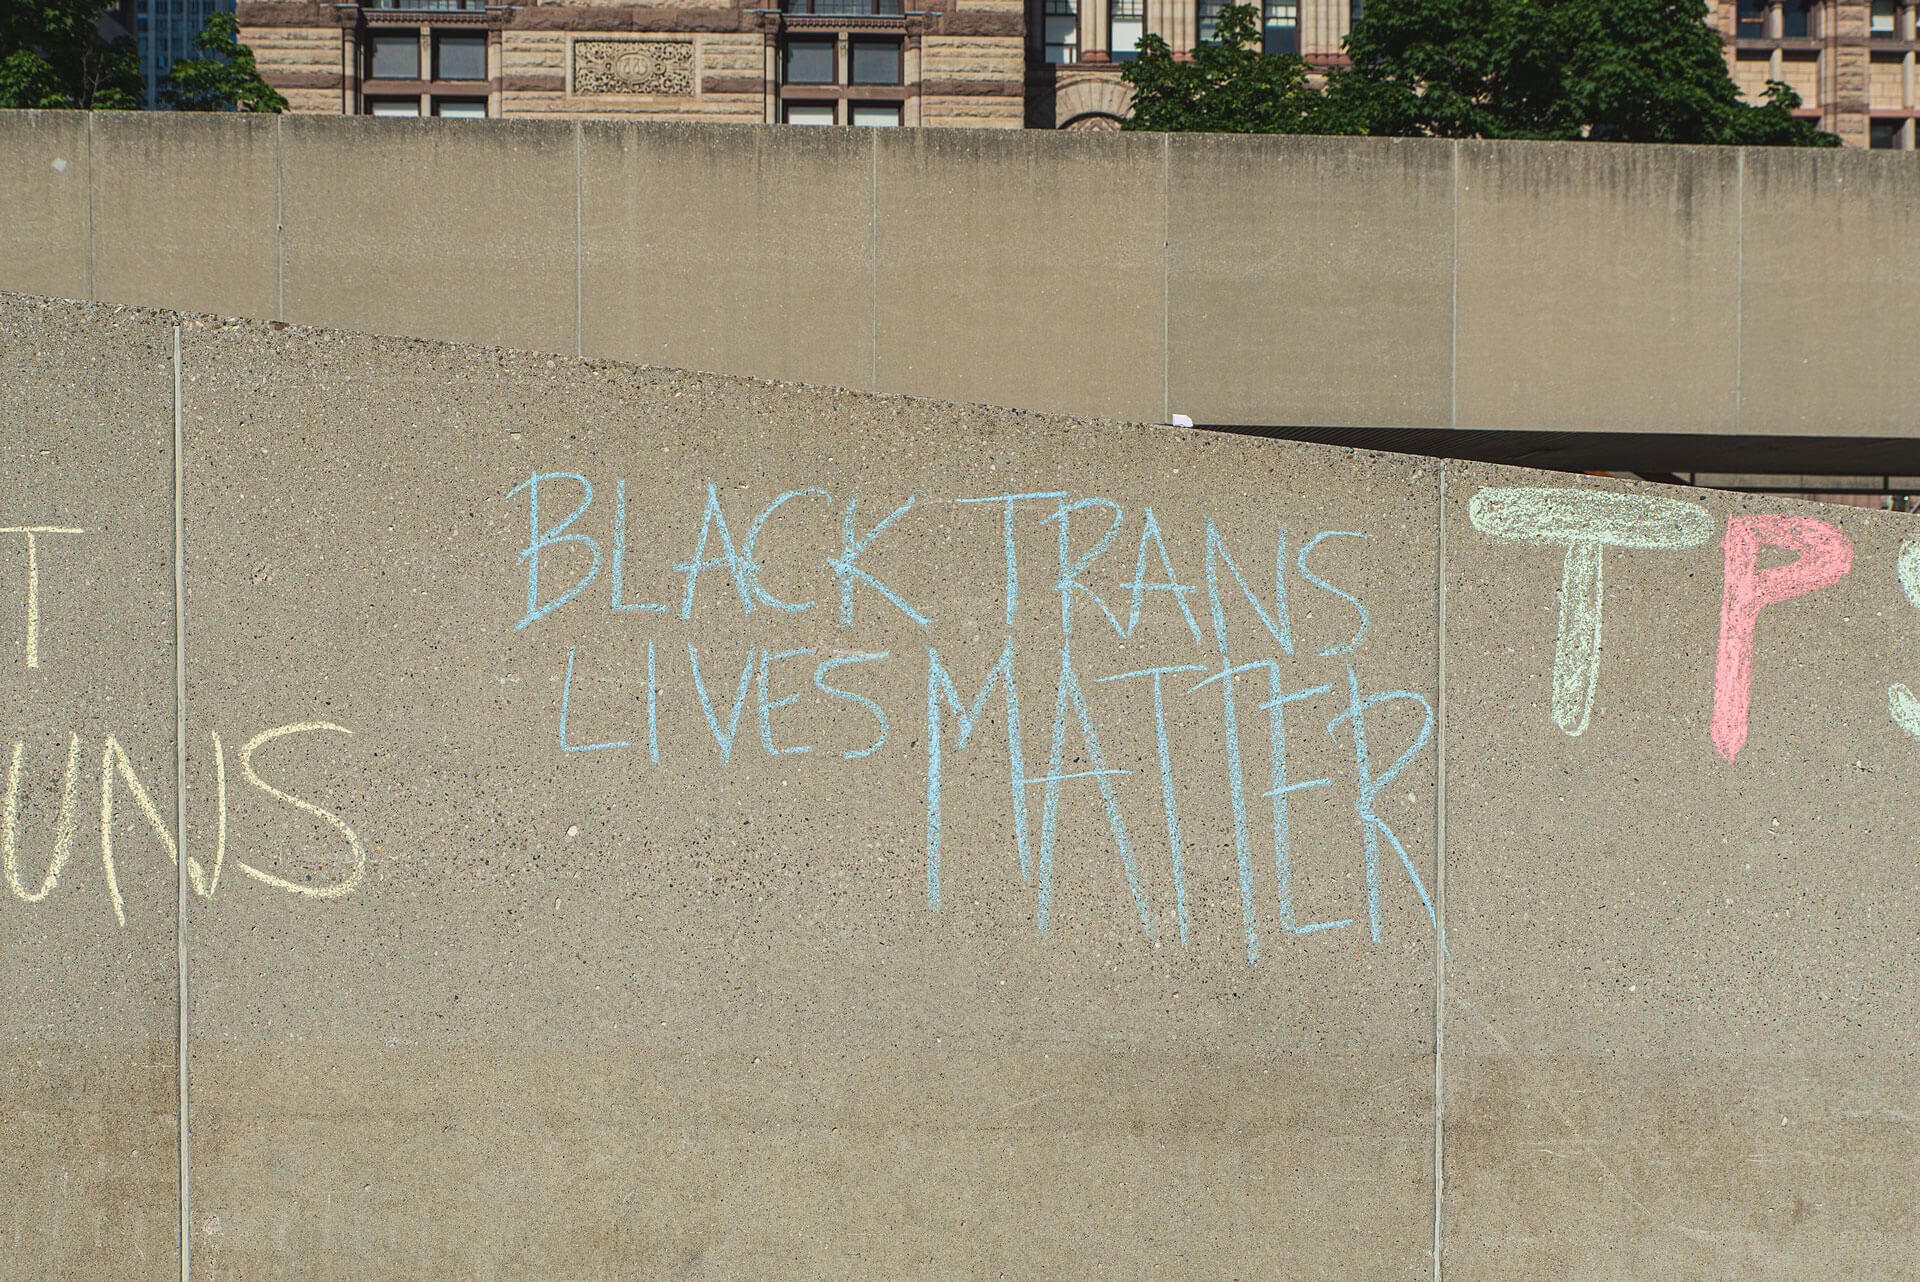 Black Trans Lives Matter sign